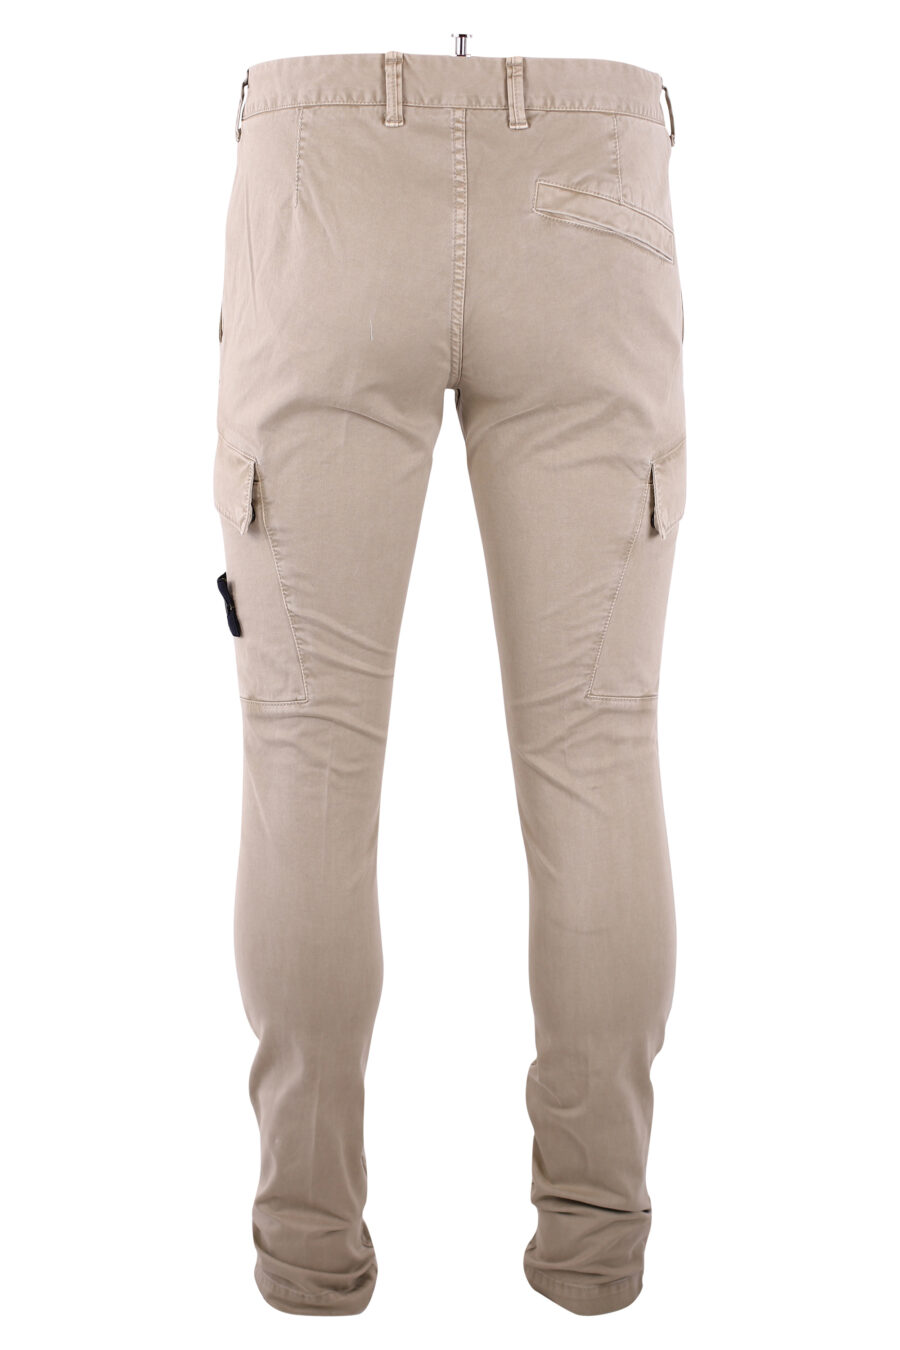 Pantalón beige con bolsillos laterales y parche - IMG 3242